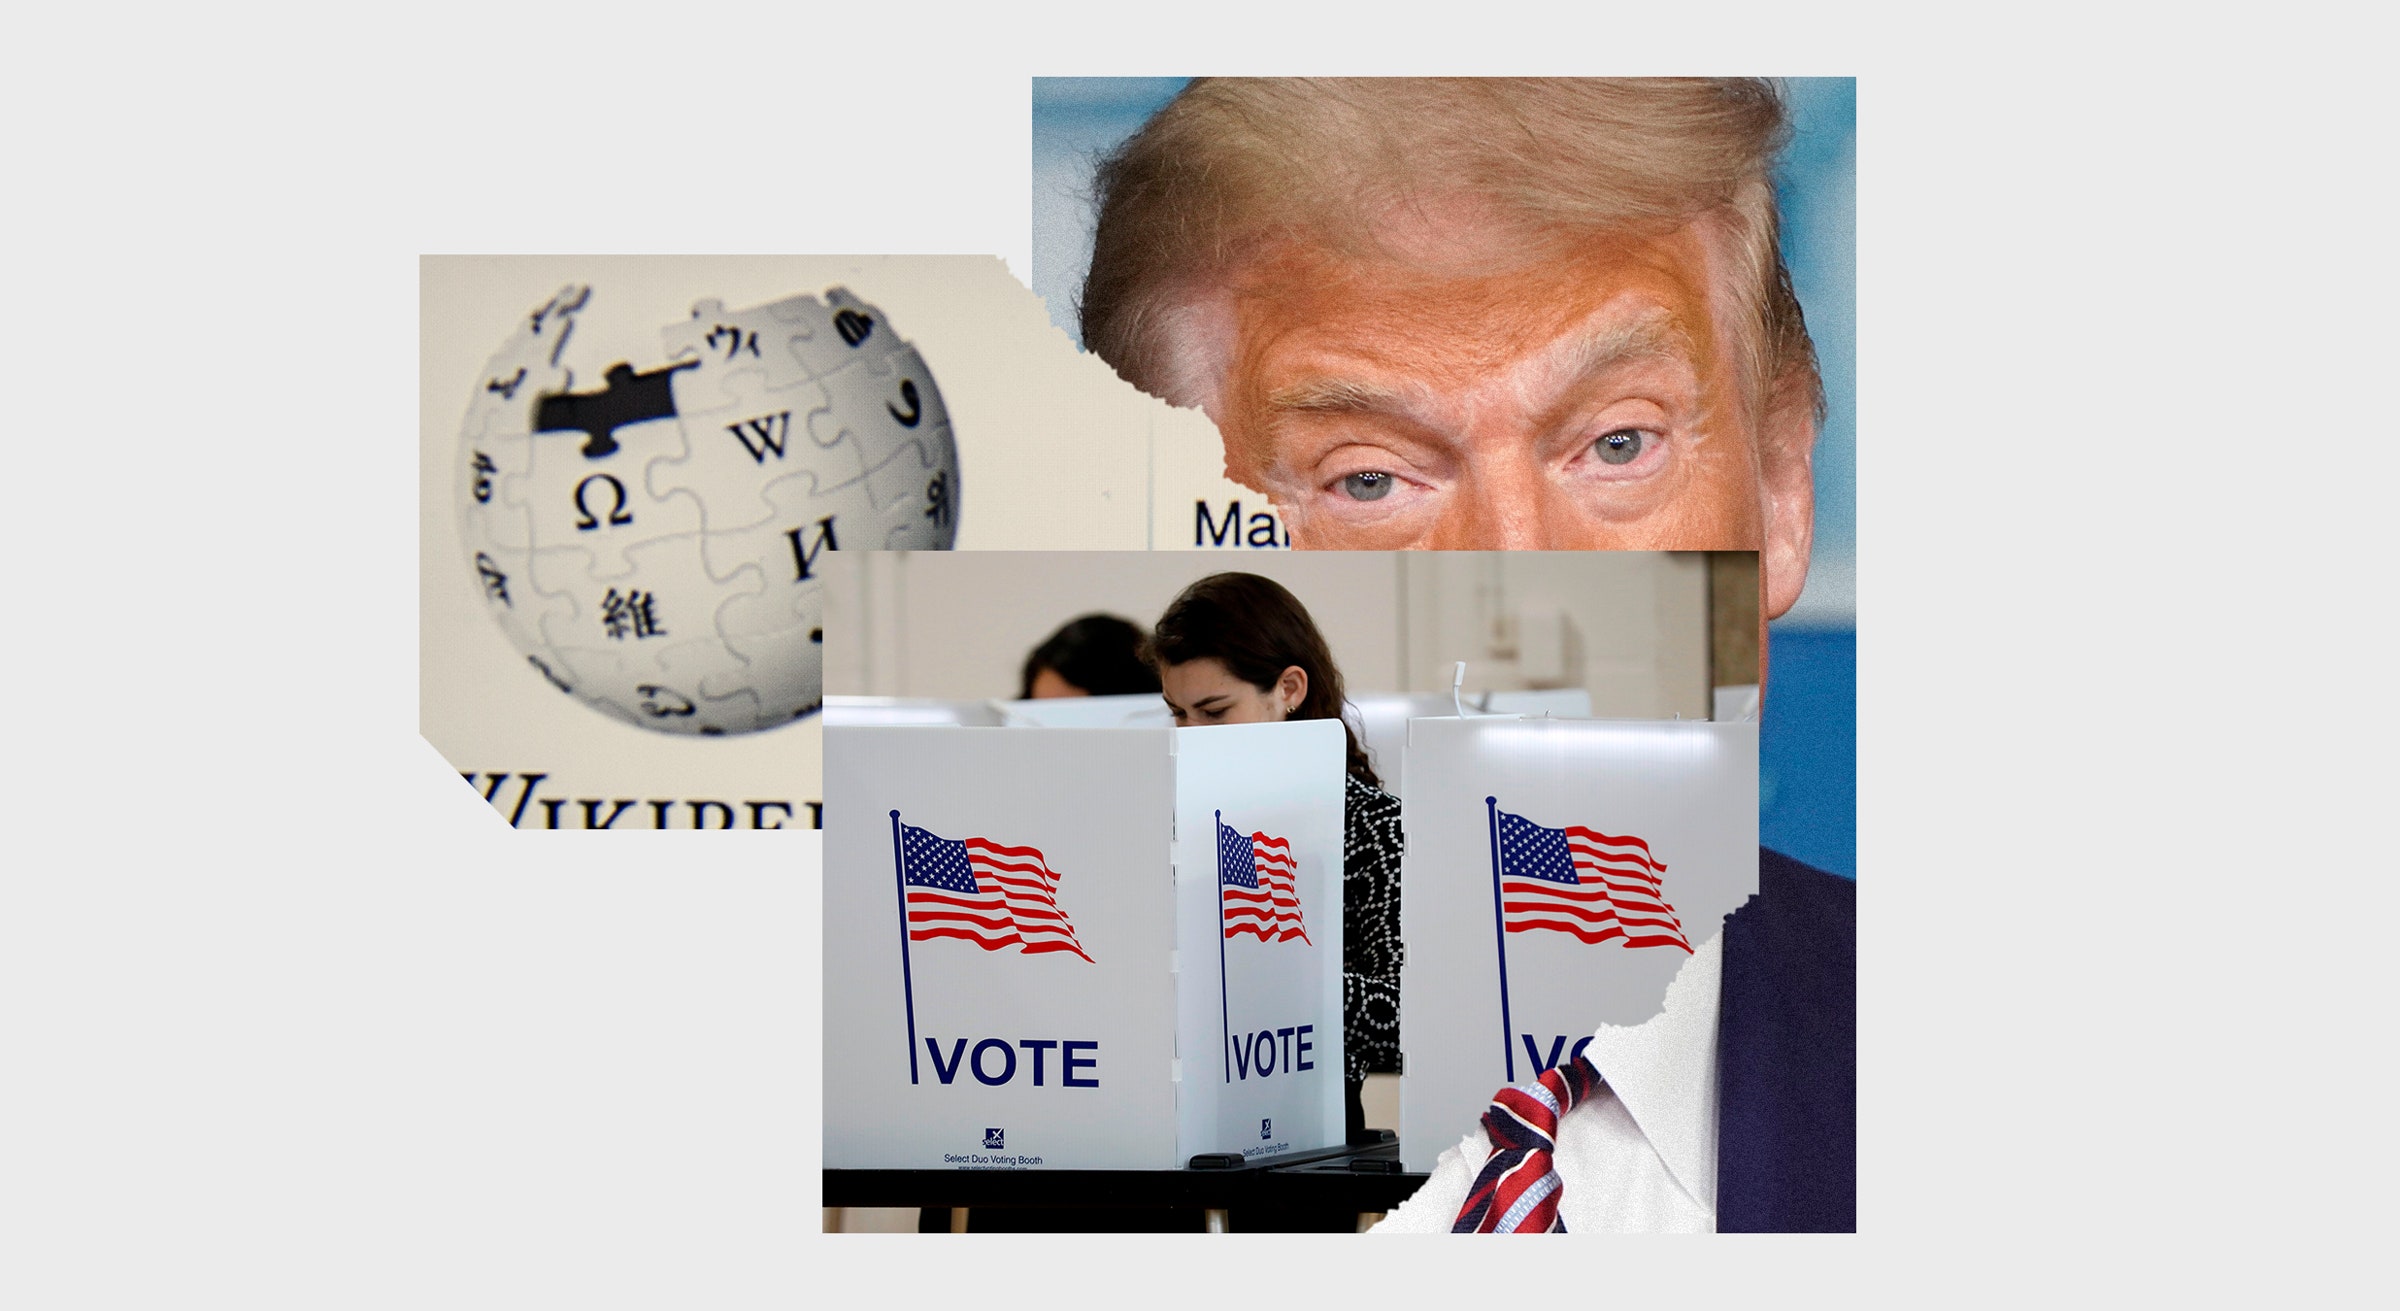 cabine de votação eleitoral Os olhos de Trump e o logotipo da Wikipedia